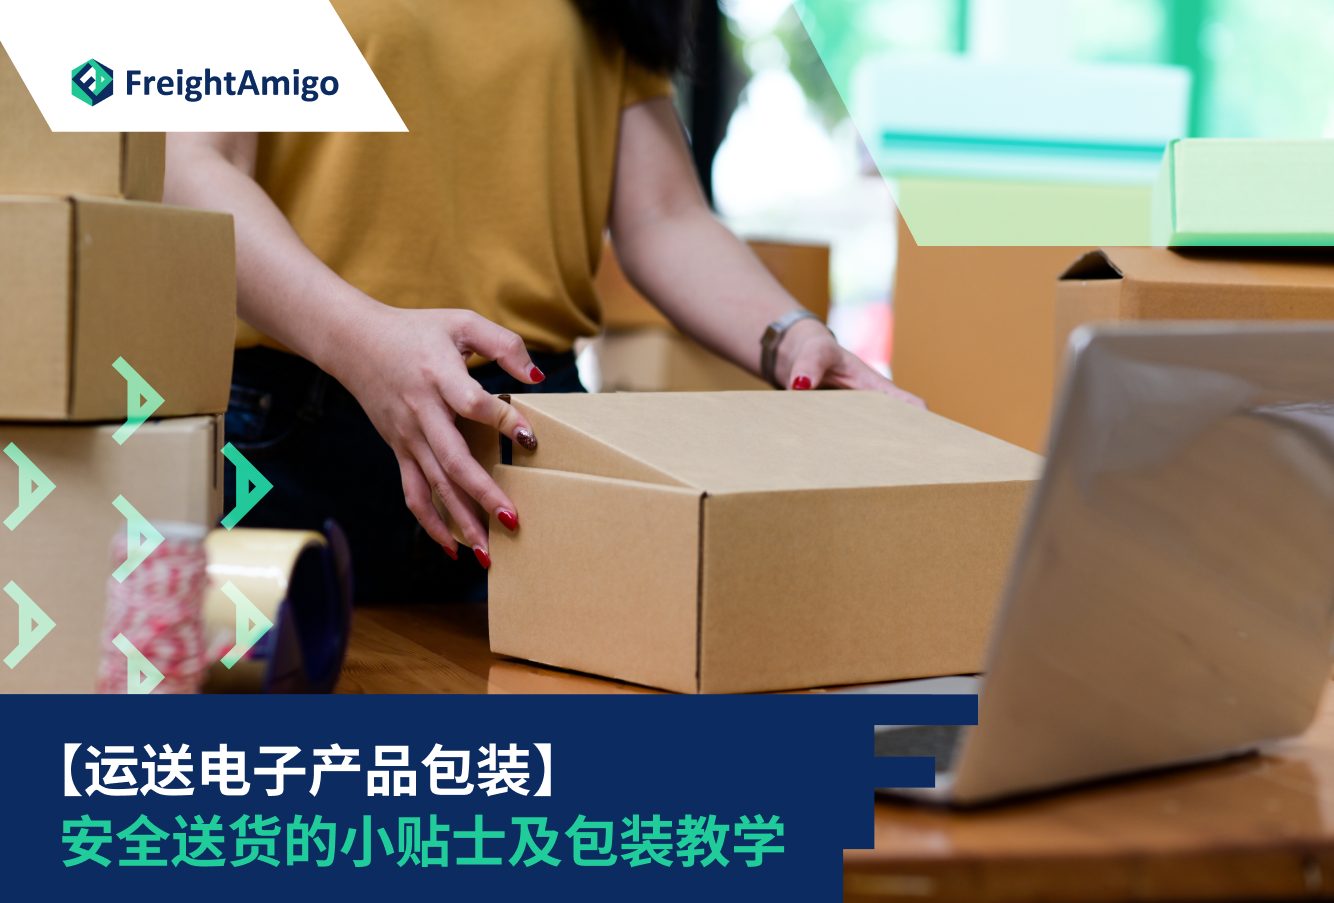 【运送电子产品包装】安全送货的小贴士及包装教学